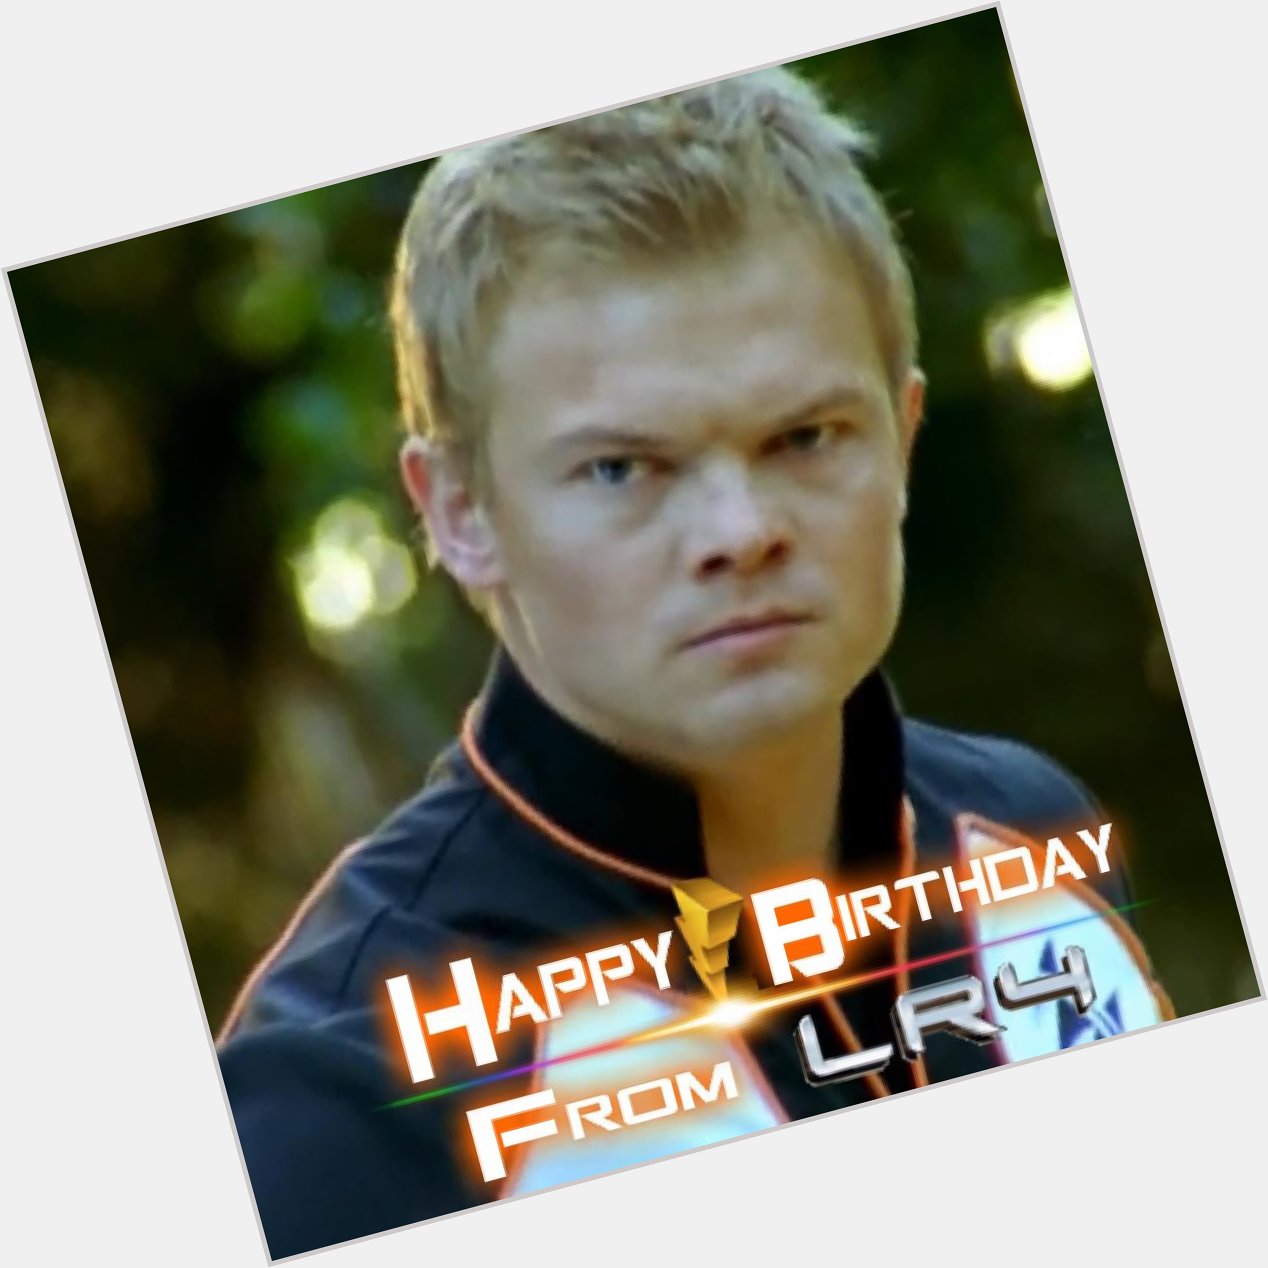 LR4 would like to wish Nikolai Nikolaeff a Happy Birthday! 